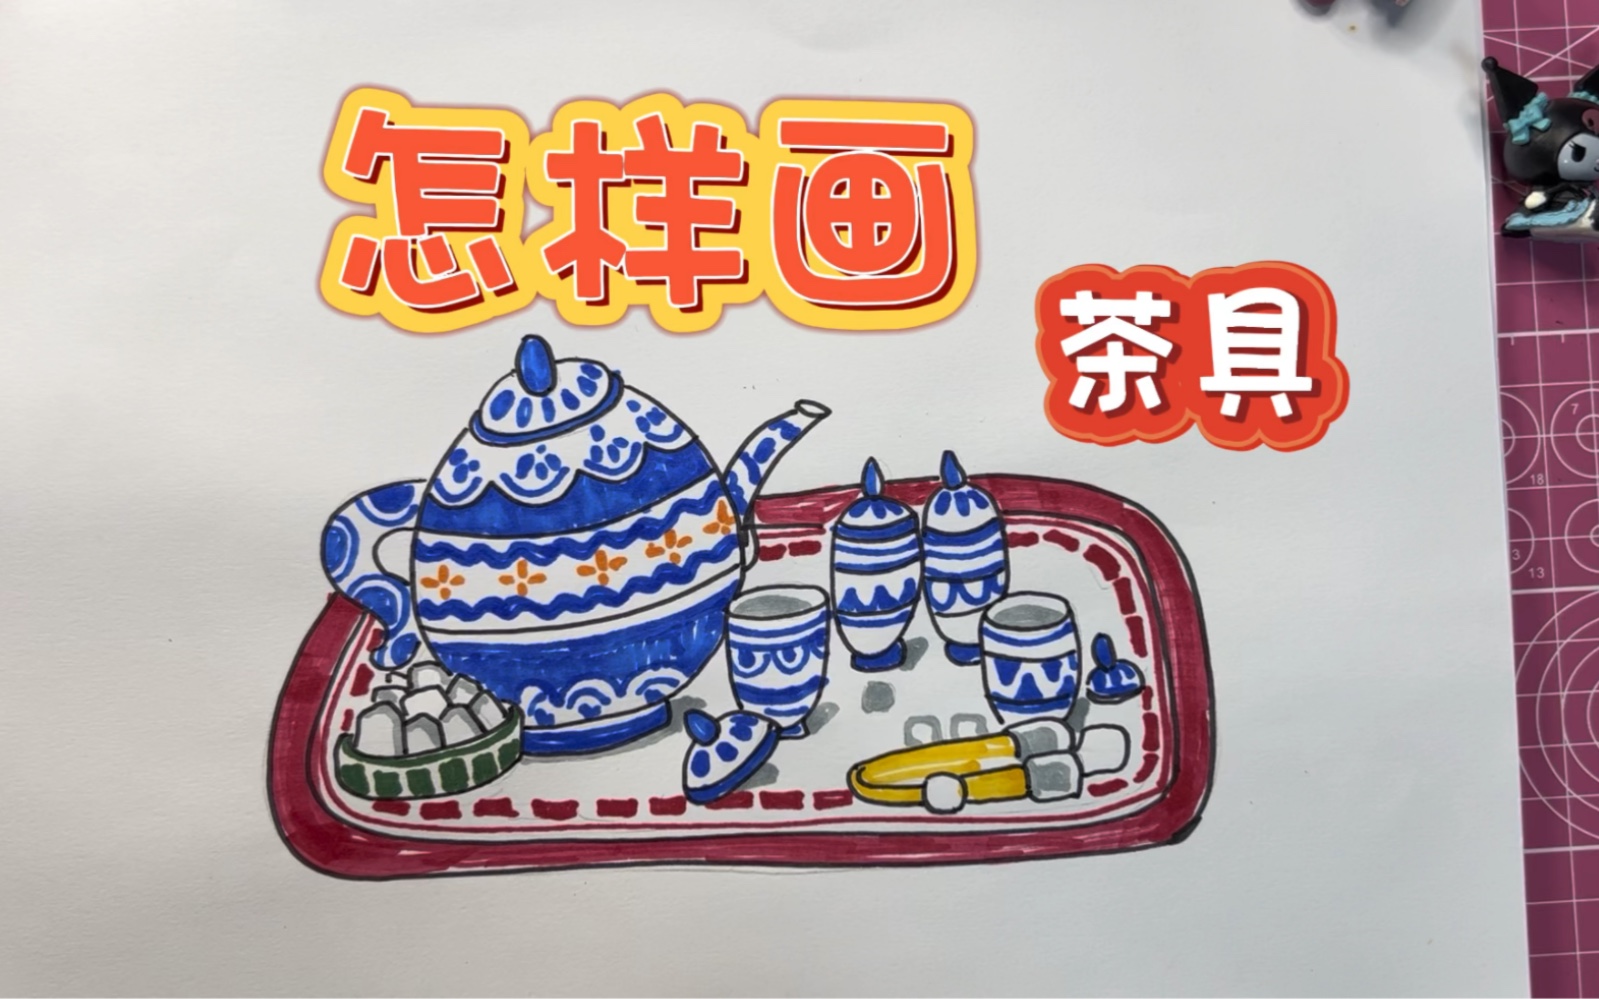 青花瓷茶壶简笔画儿童图片